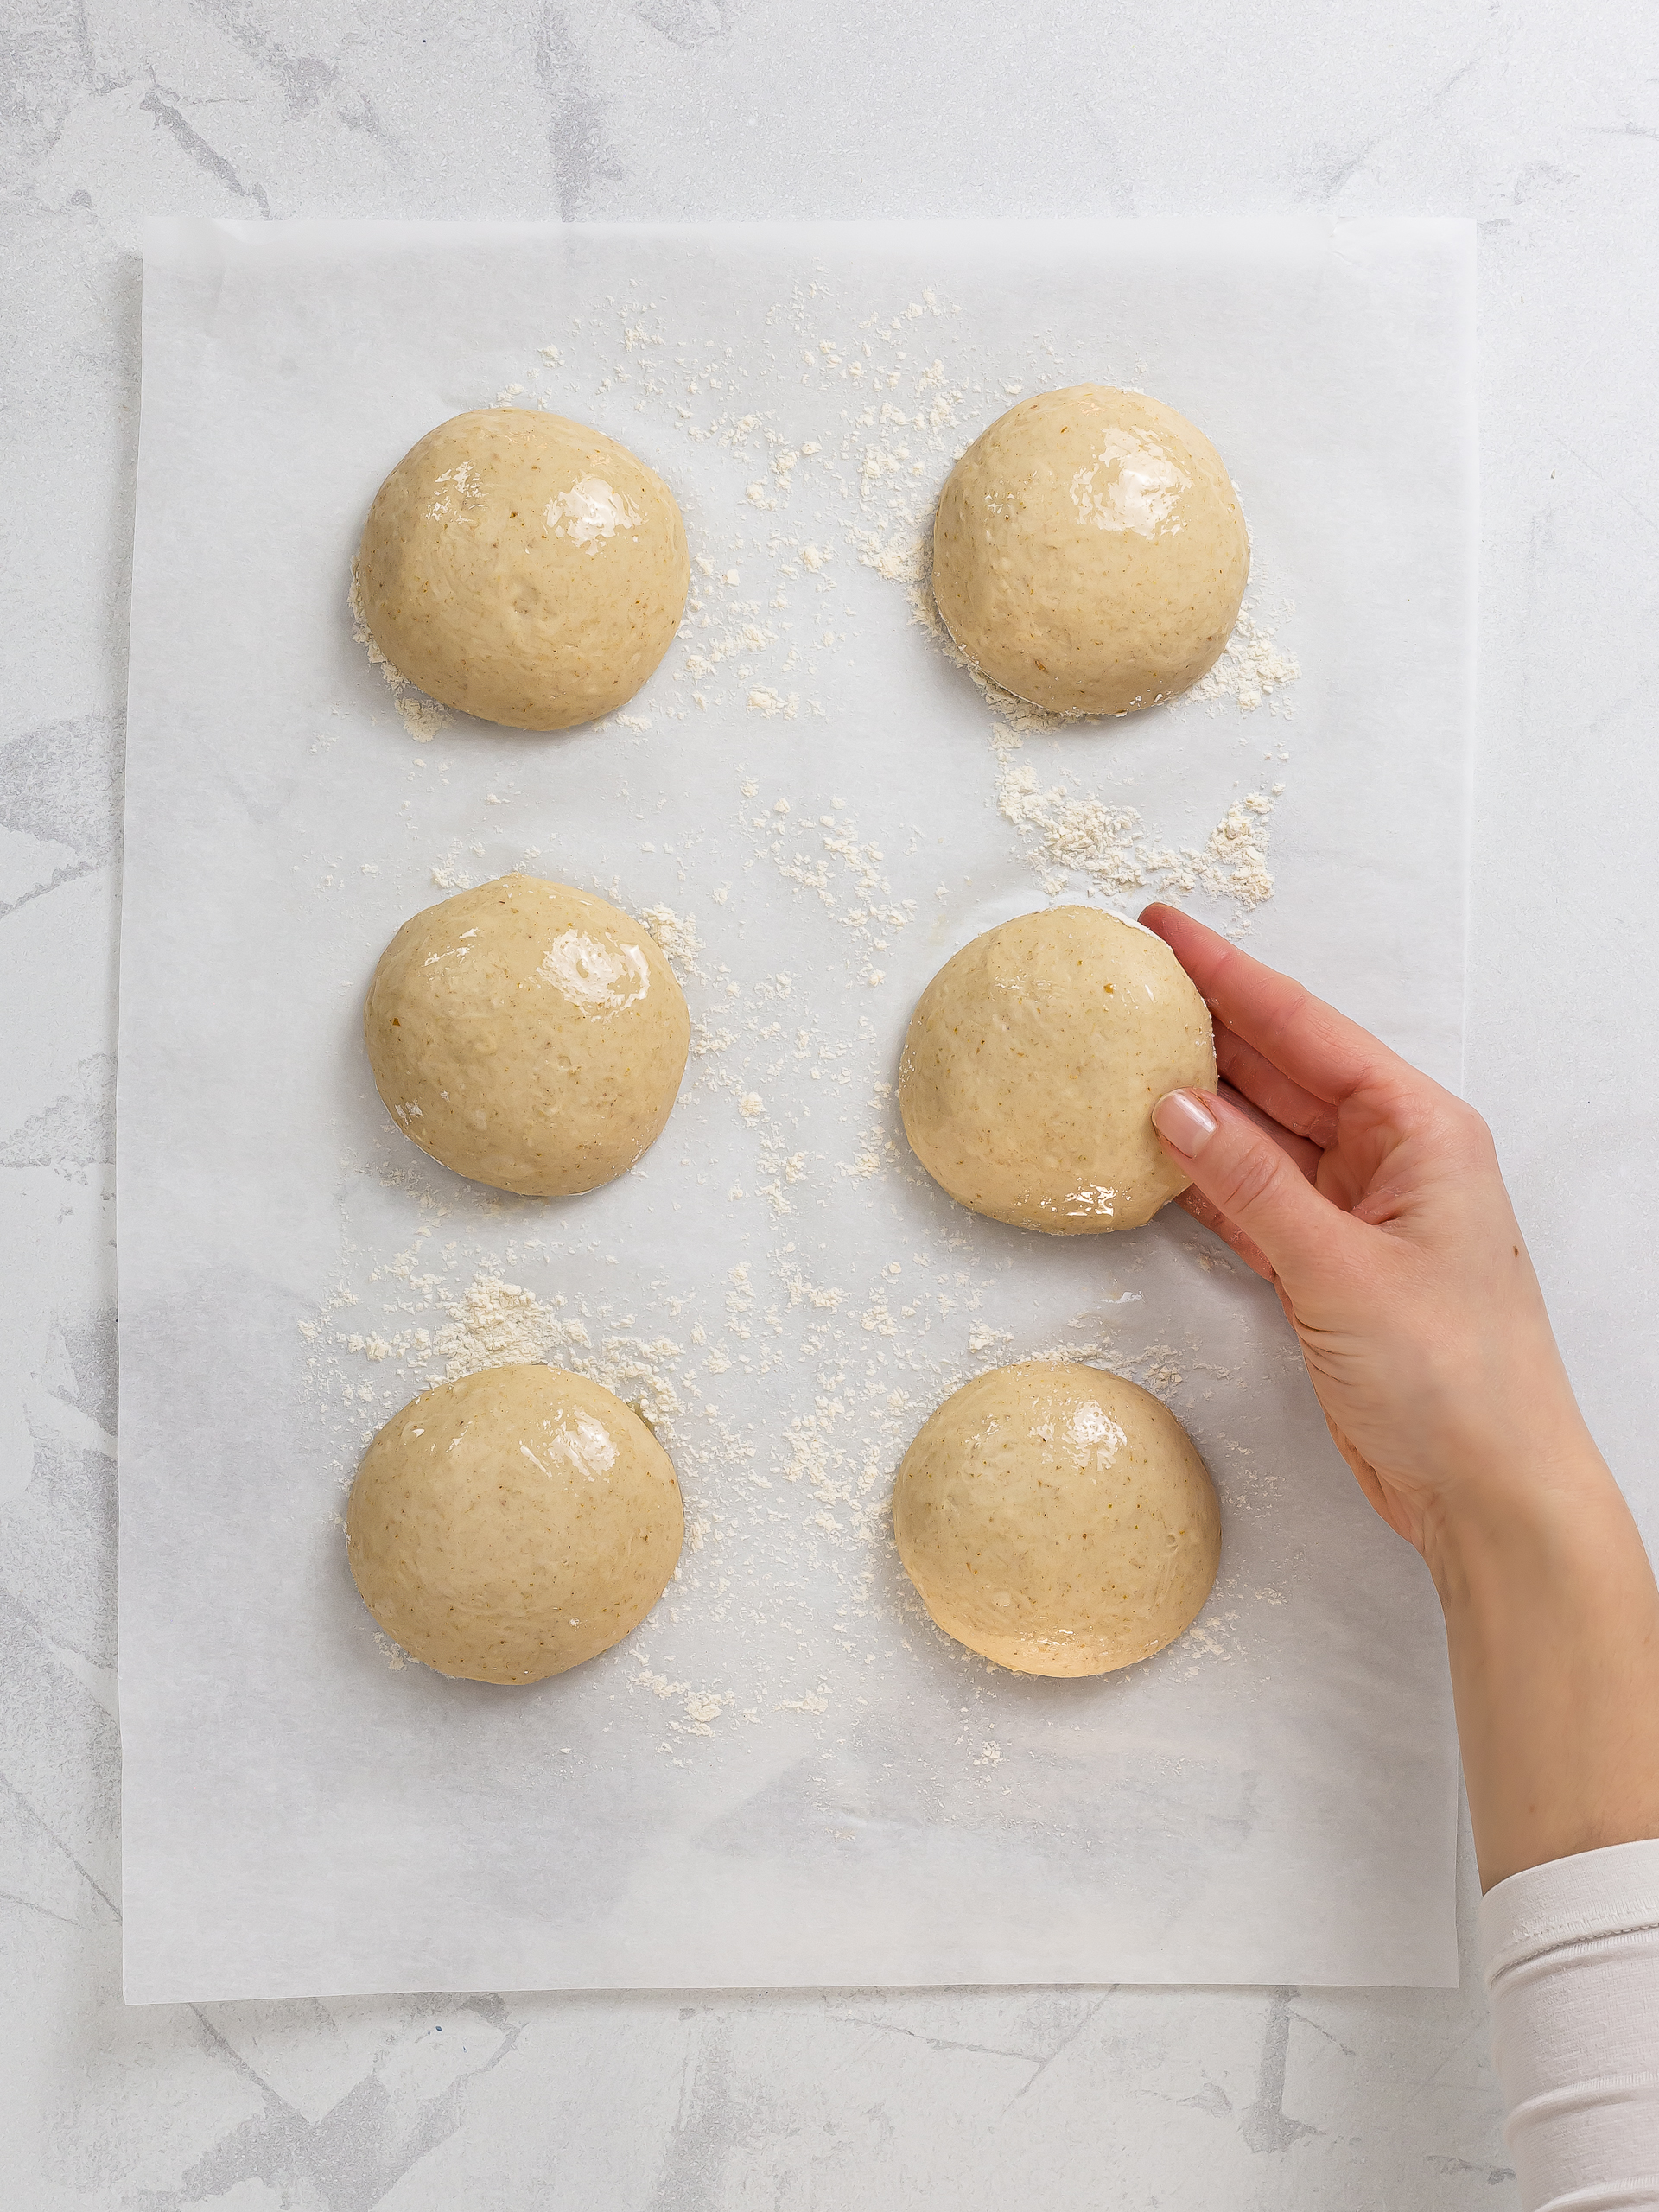 sourdough naan dough divided into balls